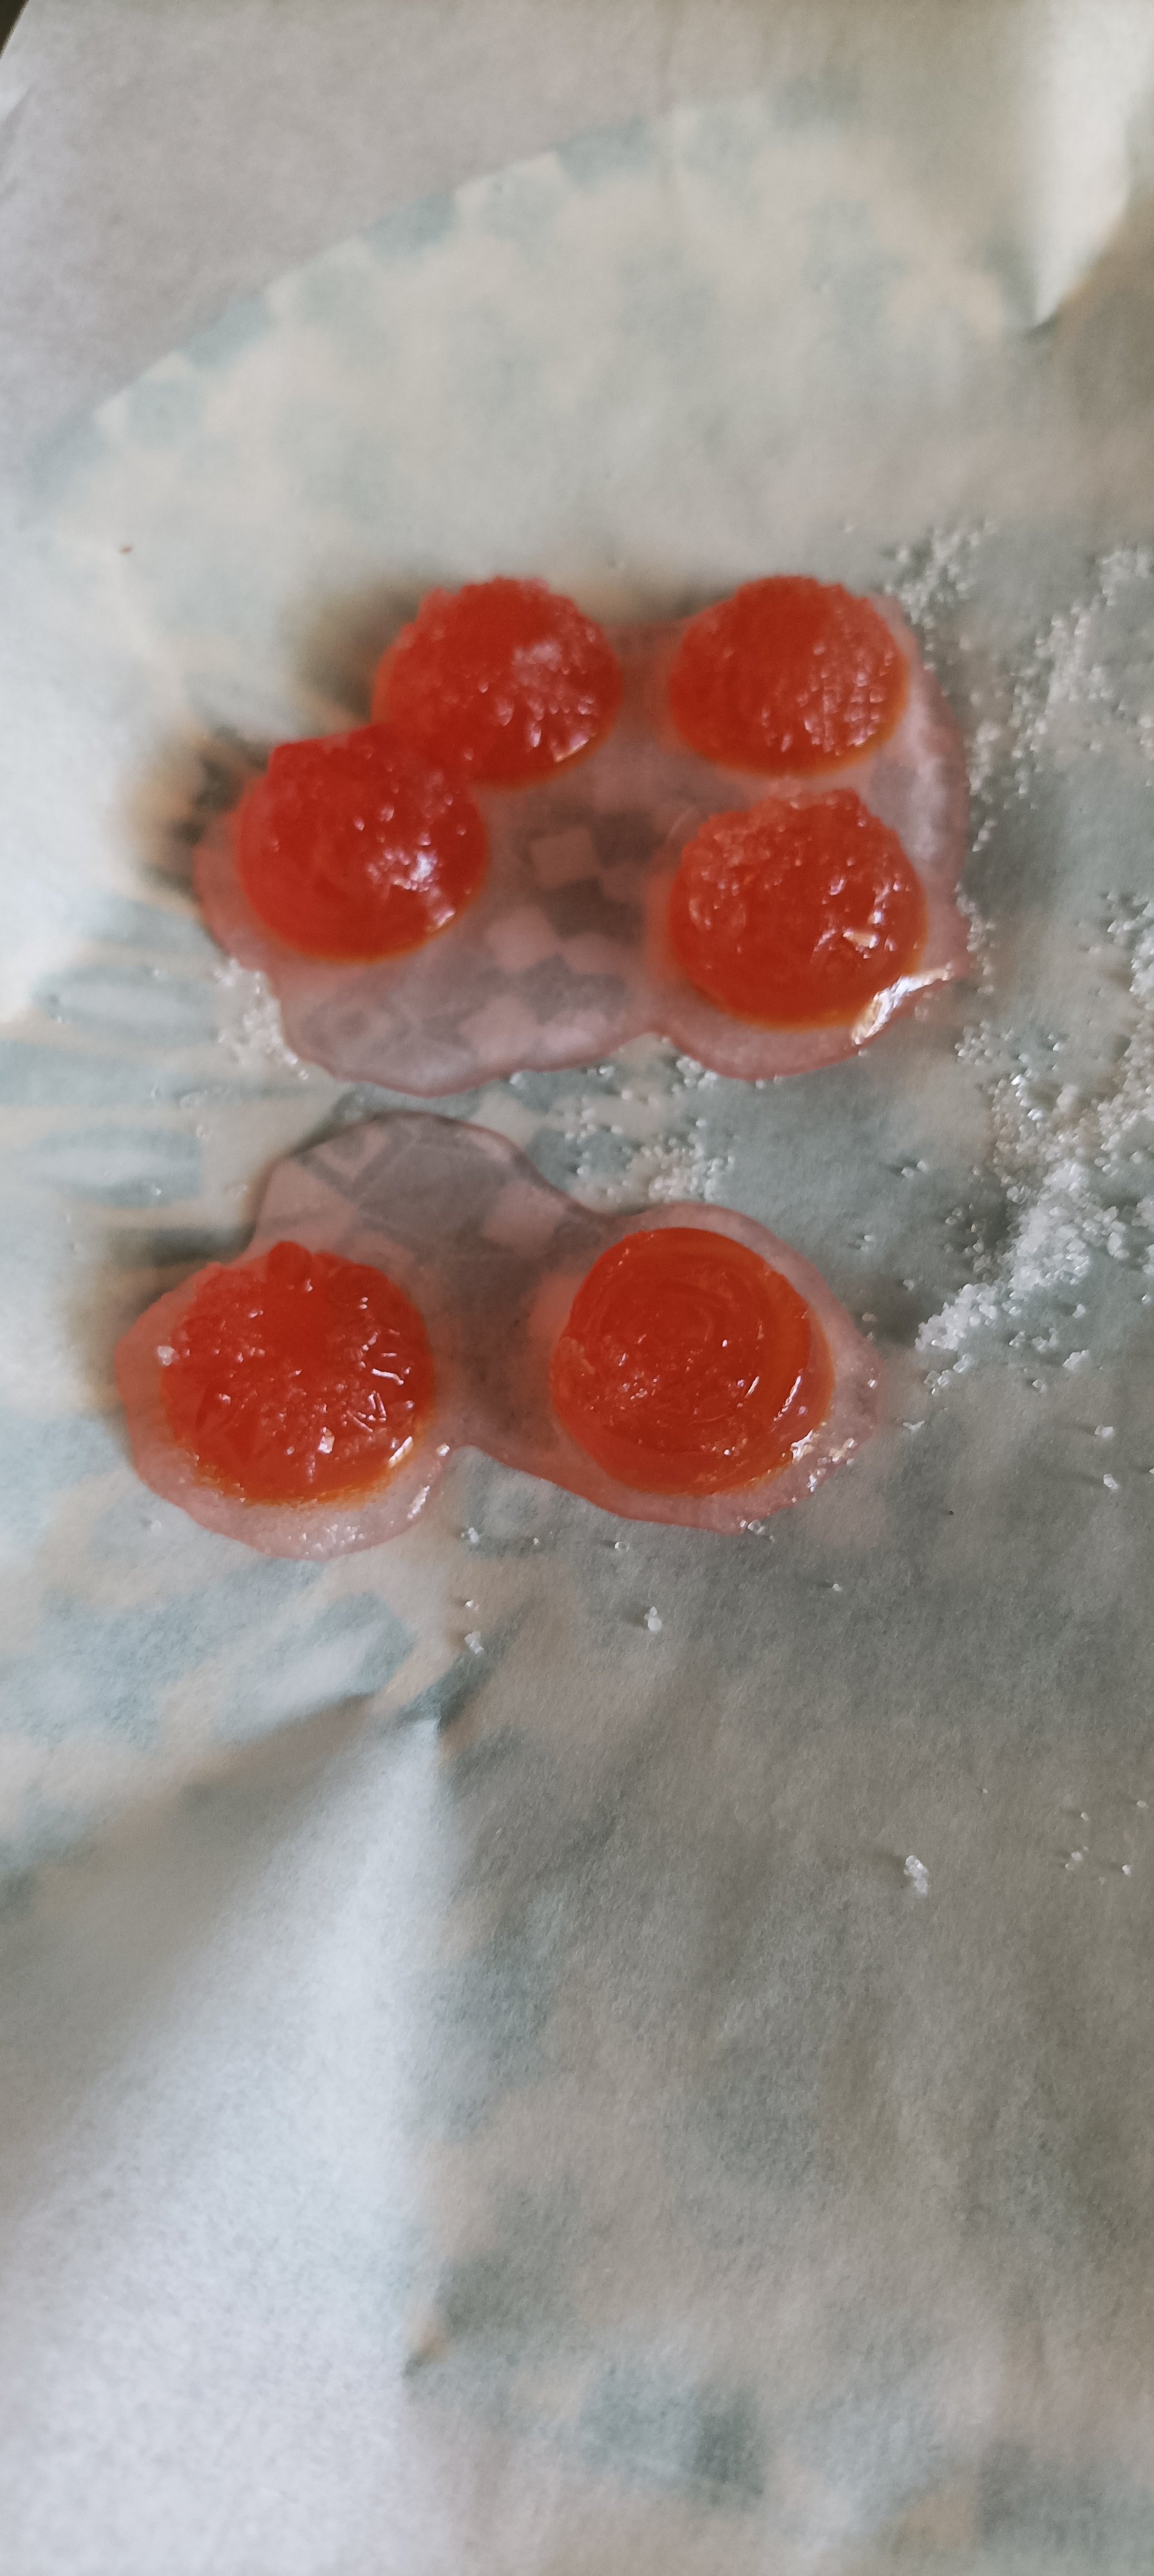 Gelatine di frutta: le caramelle gelee fatte in casa 